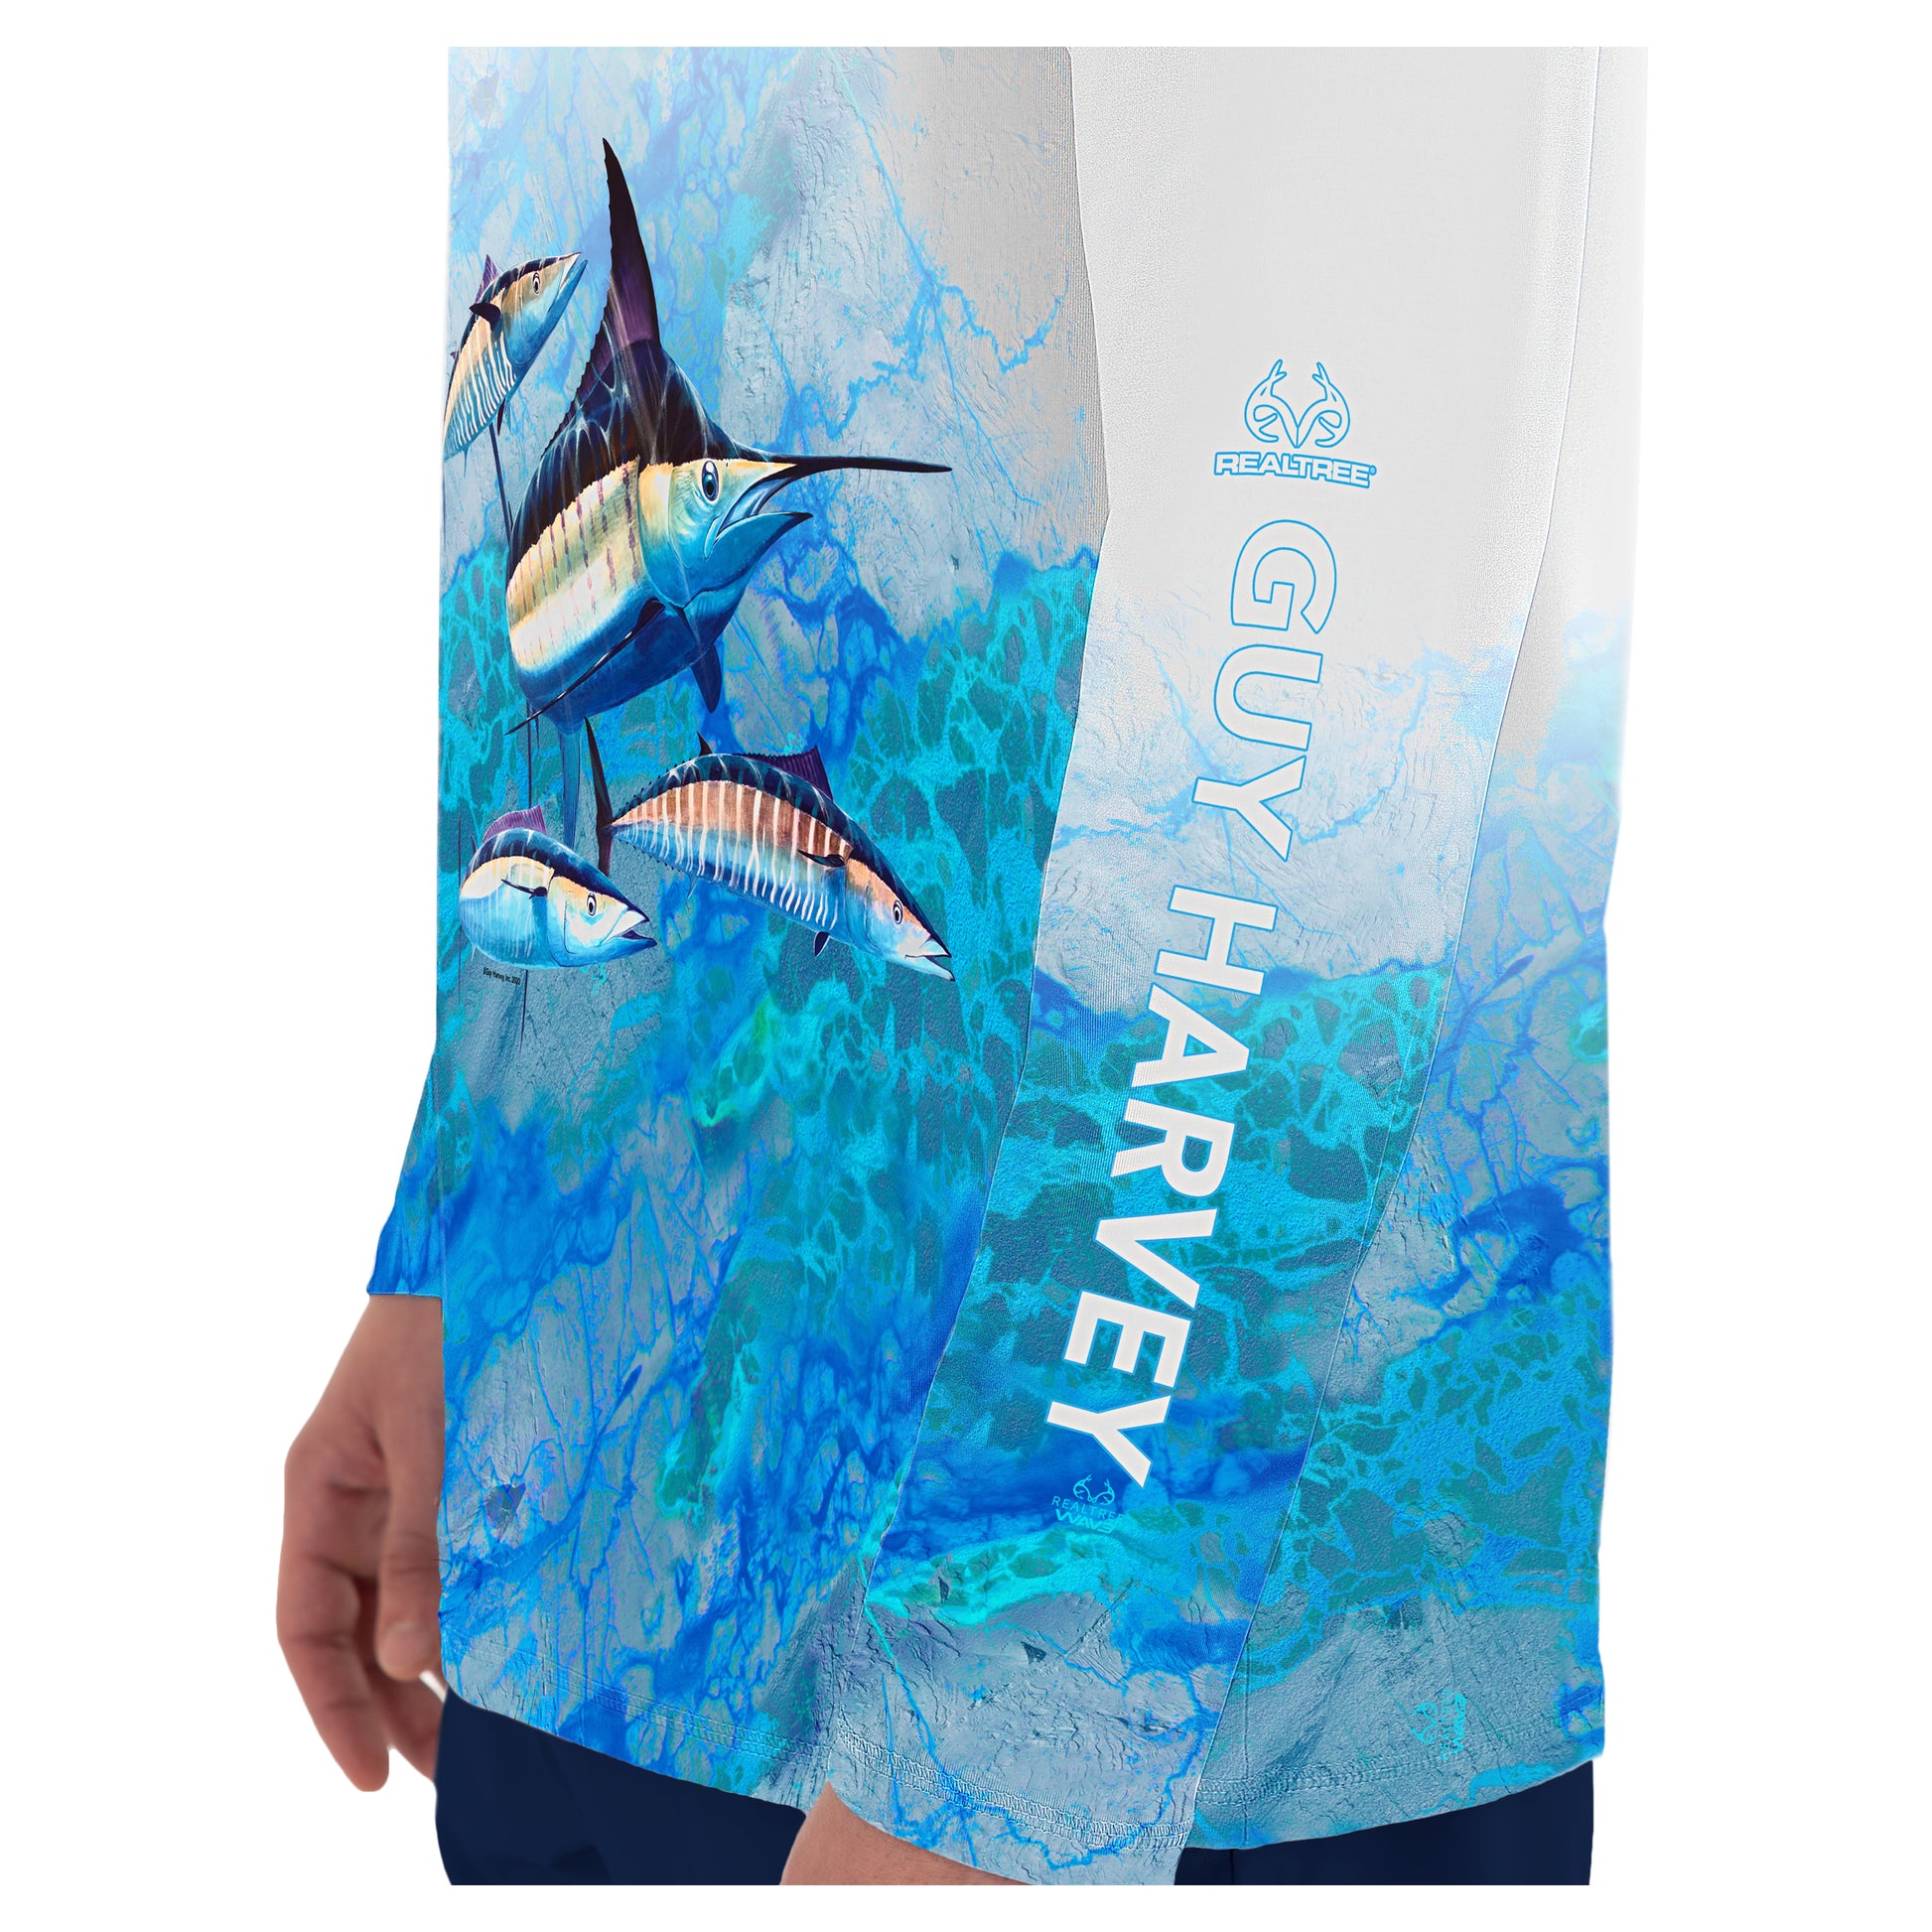 GUY HARVEY FISH CAMO MEN'S XL FISHING SHIRT - clothing